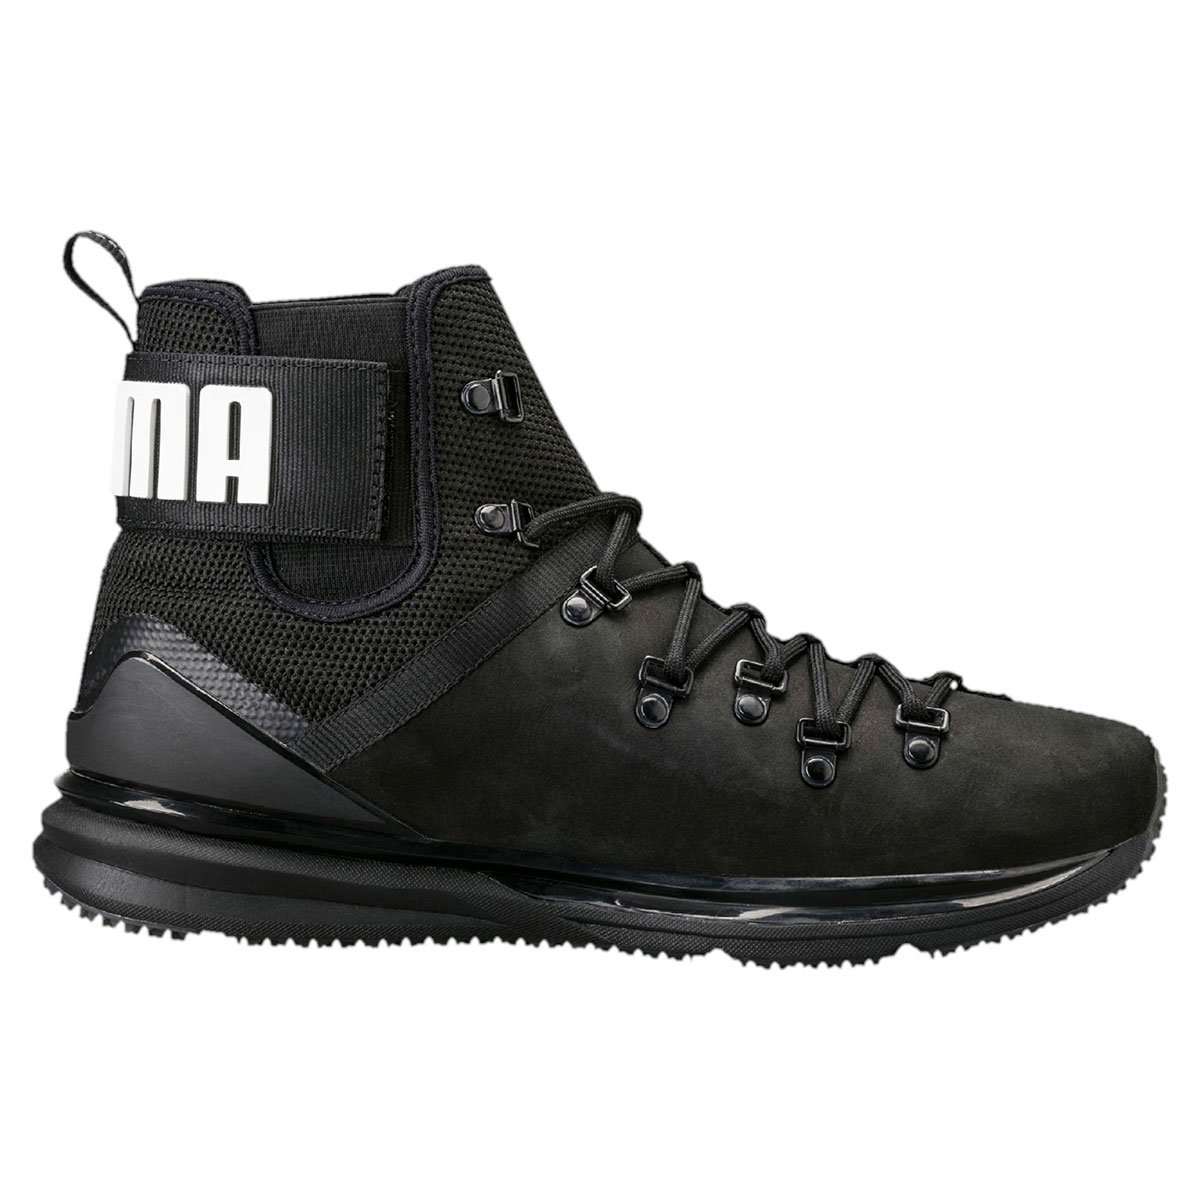 Puma Ignite Limitless Boot Leath Мъжки спортни обувки 190563-01